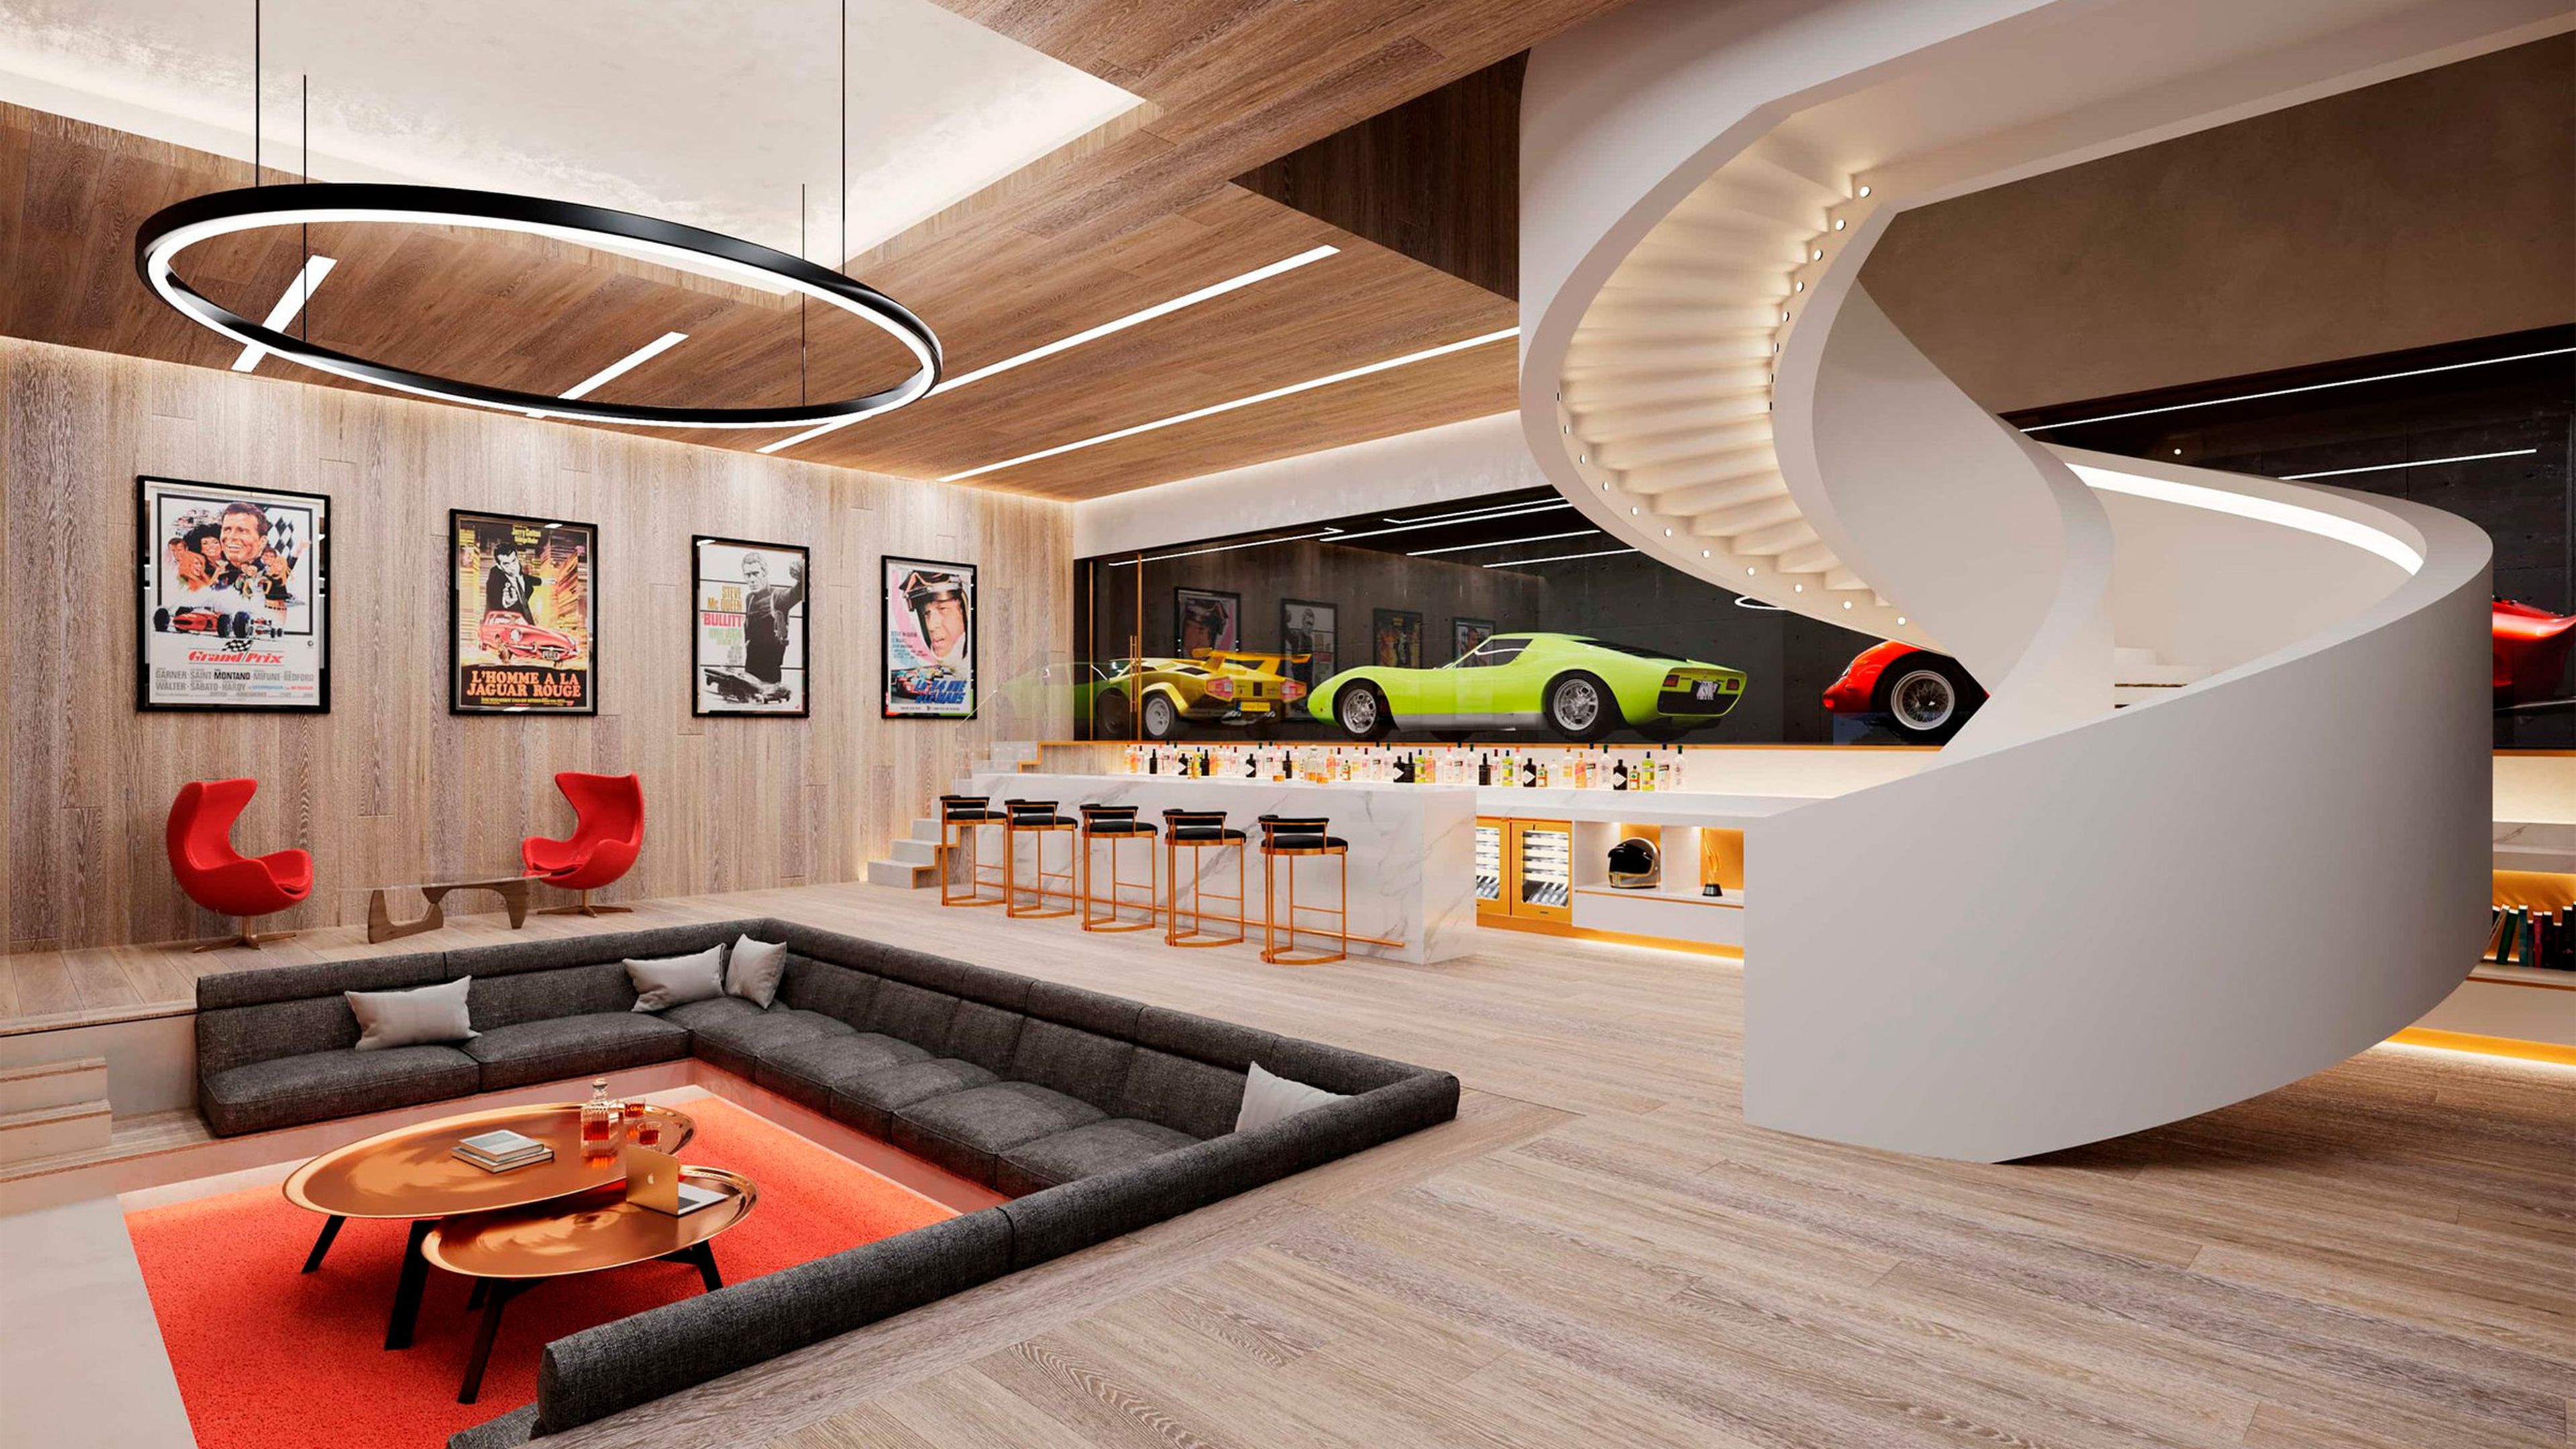 Proyecto de arquitectura con coches de lujo, Garage Deluxe.